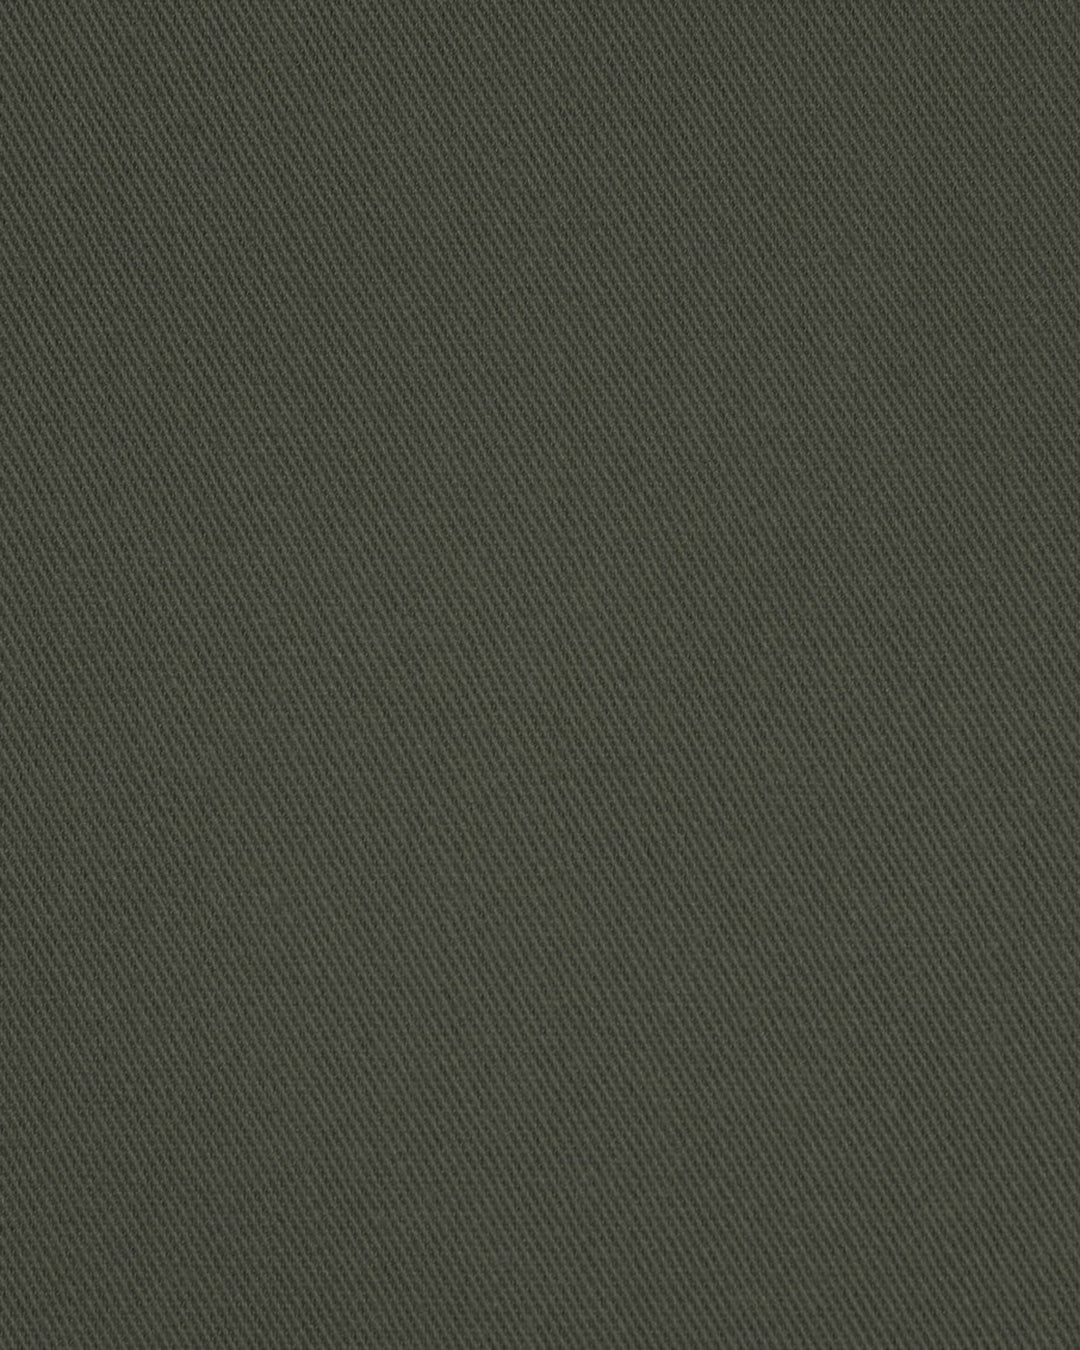 Cotton Twill: Dark Blanch Green